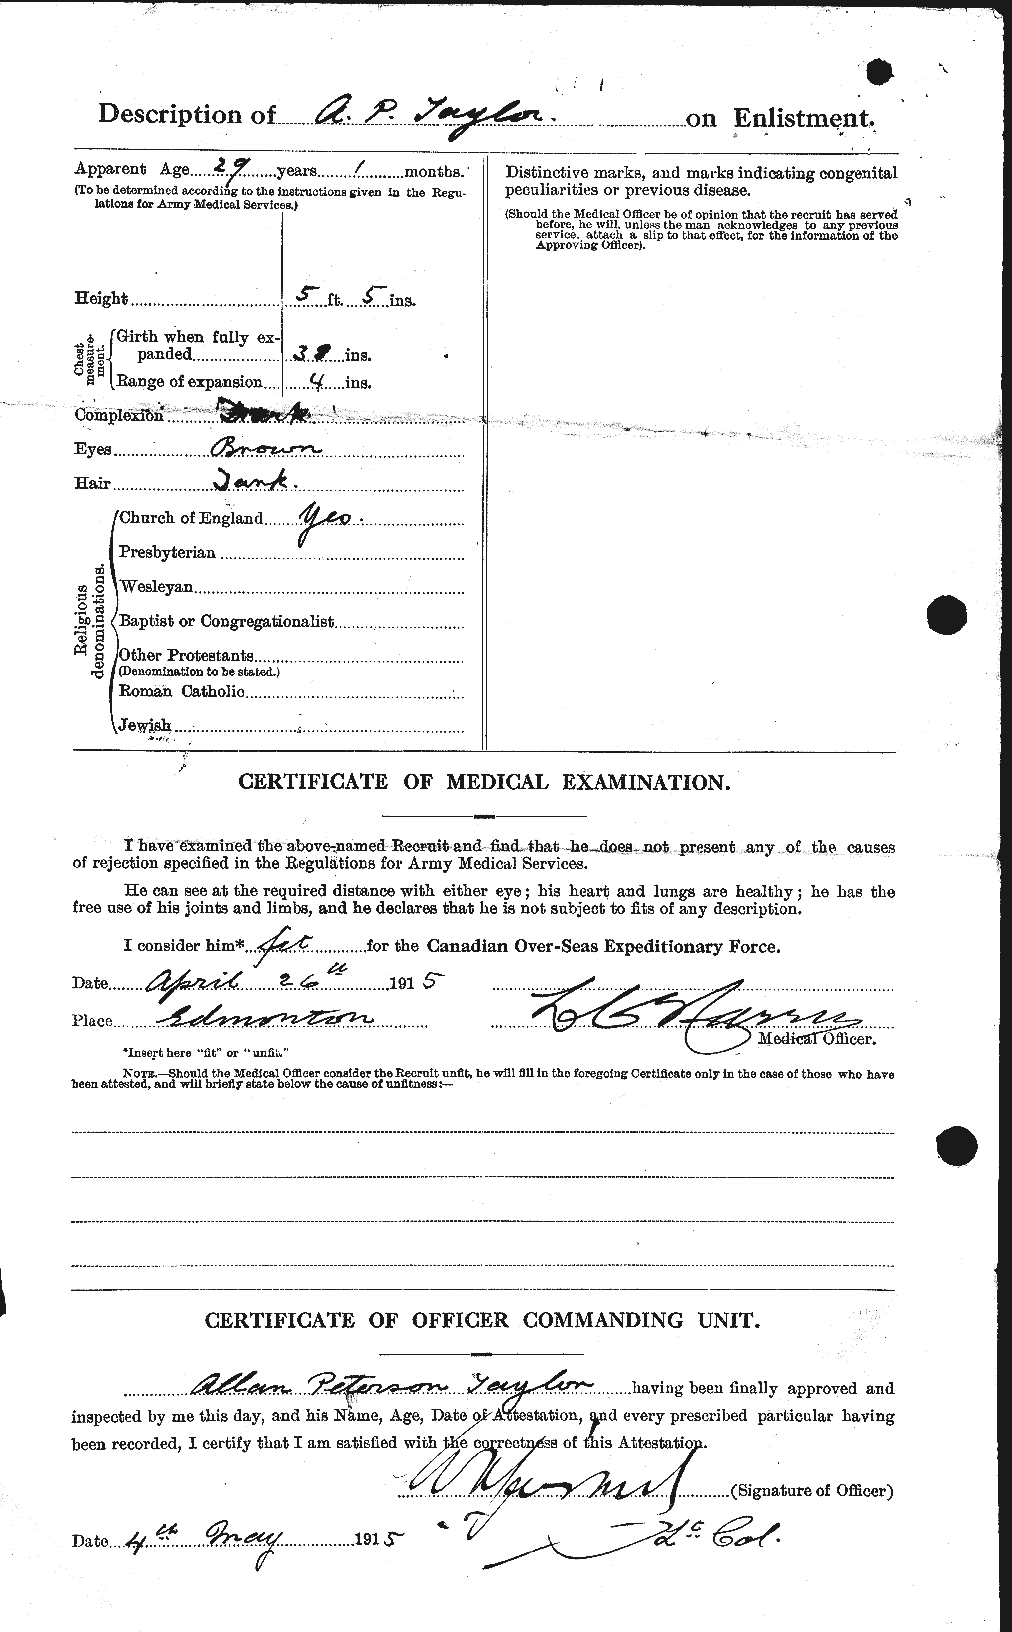 Dossiers du Personnel de la Première Guerre mondiale - CEC 626210b